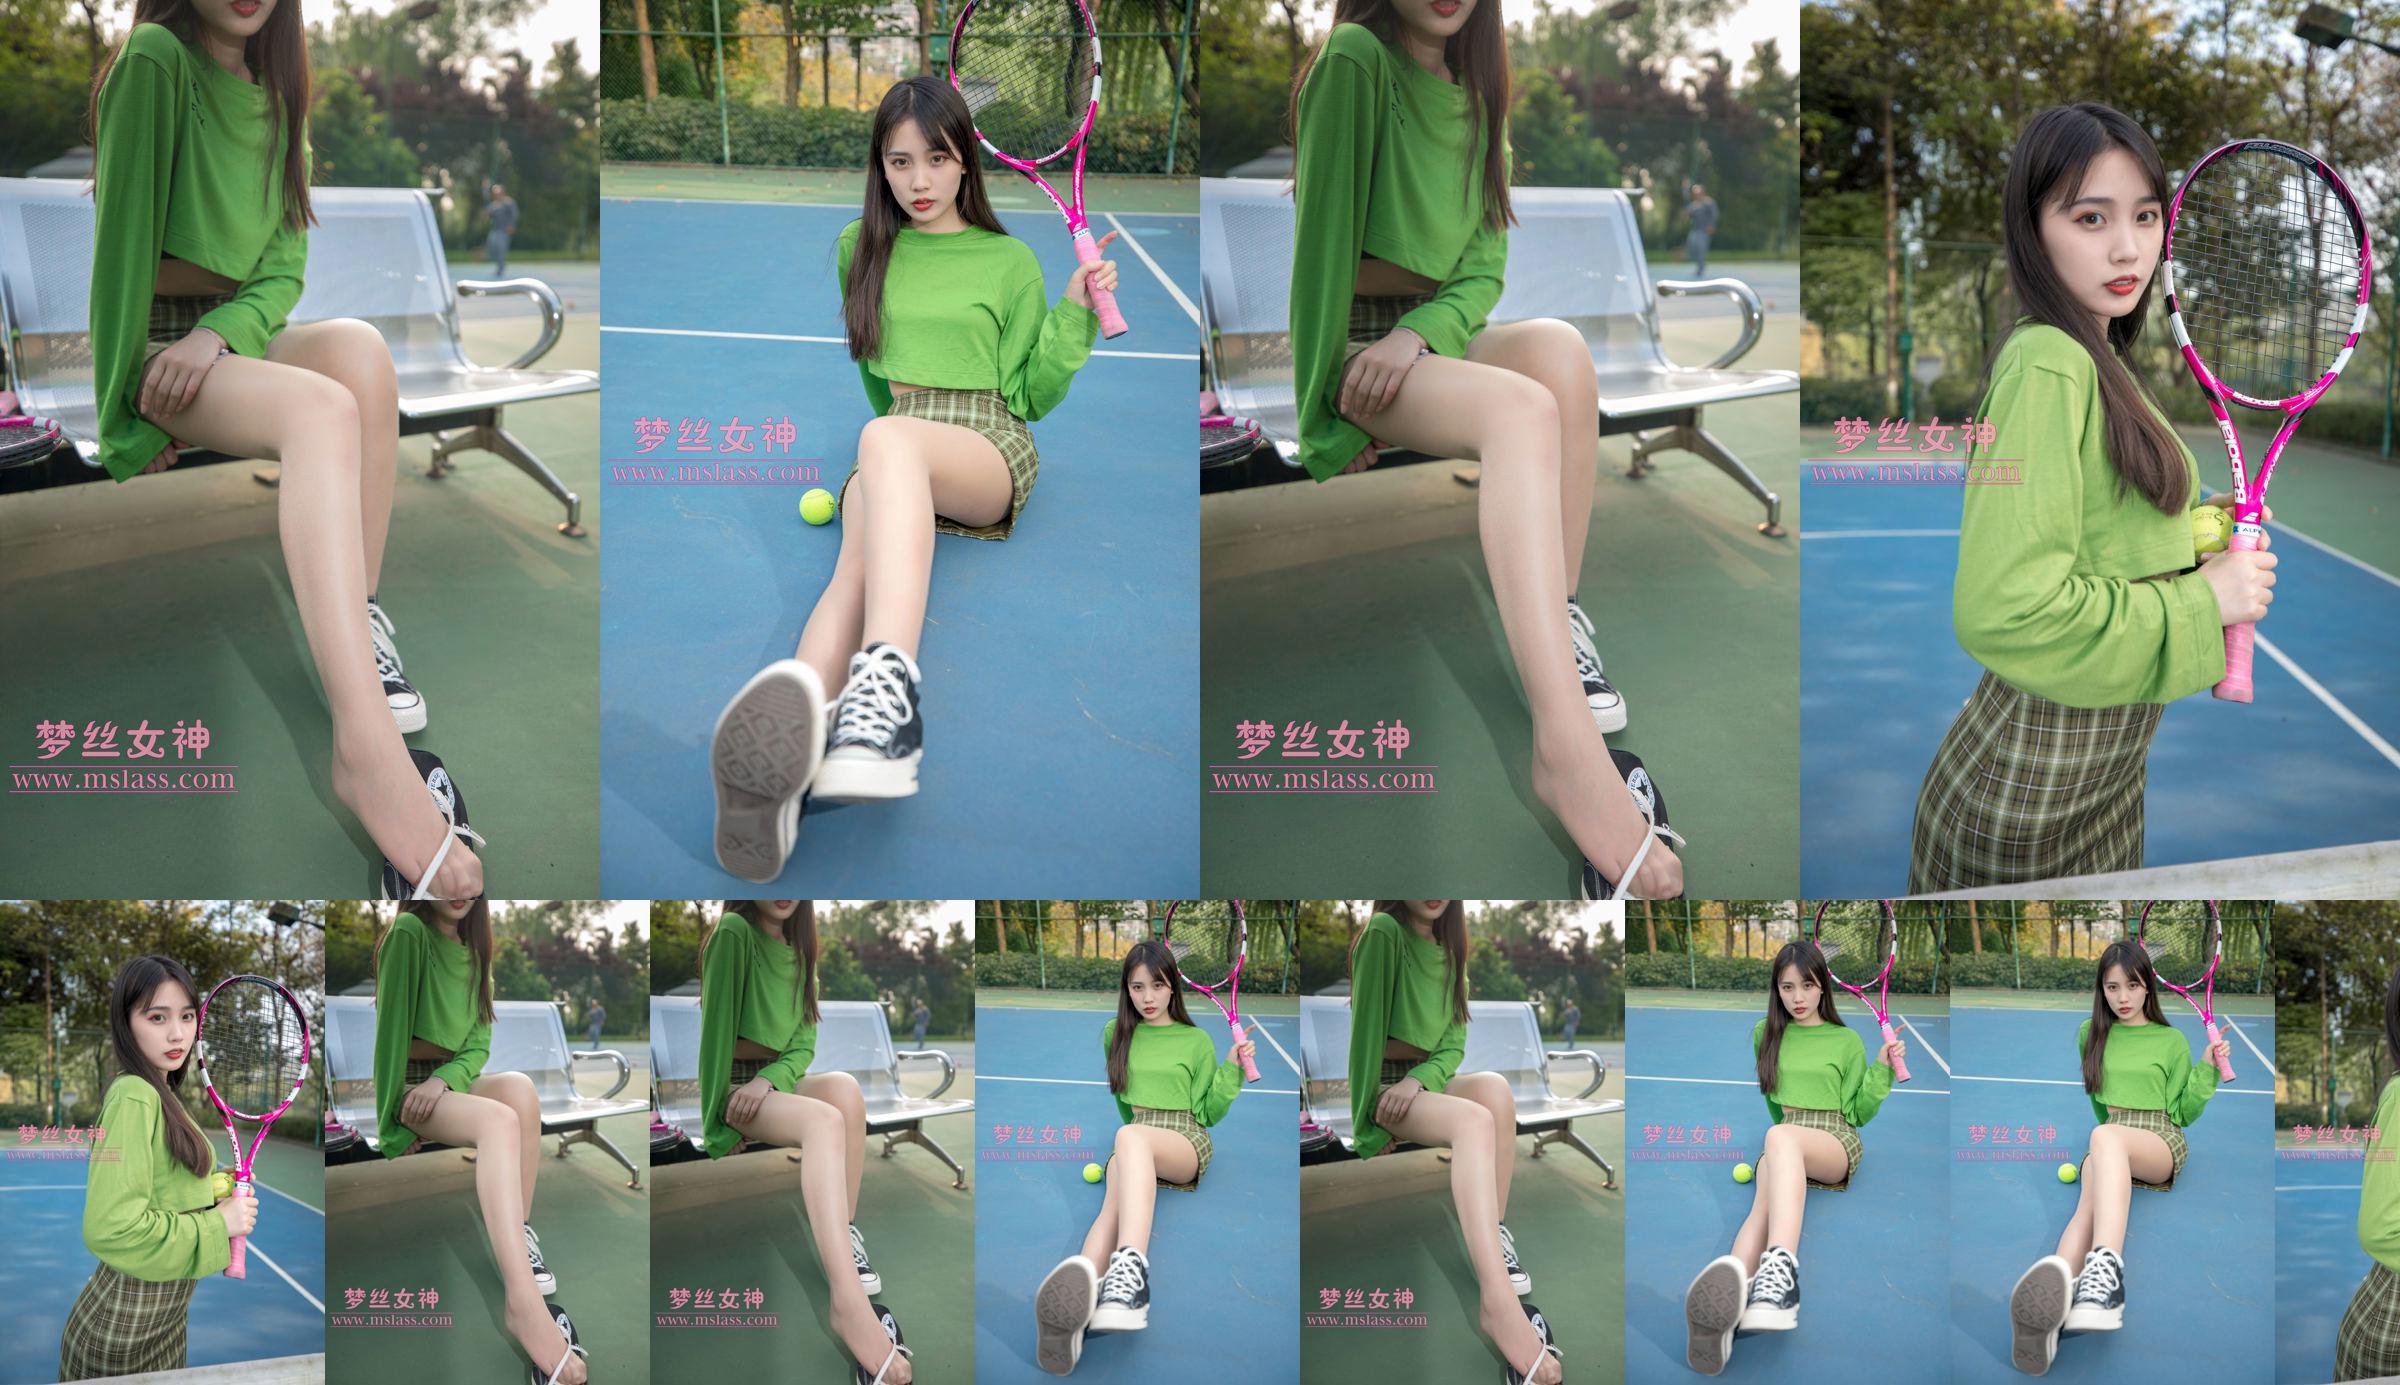 [꿈의 여신 MSLASS] Xiang Xuan 테니스 소녀 No.76e240 페이지 2